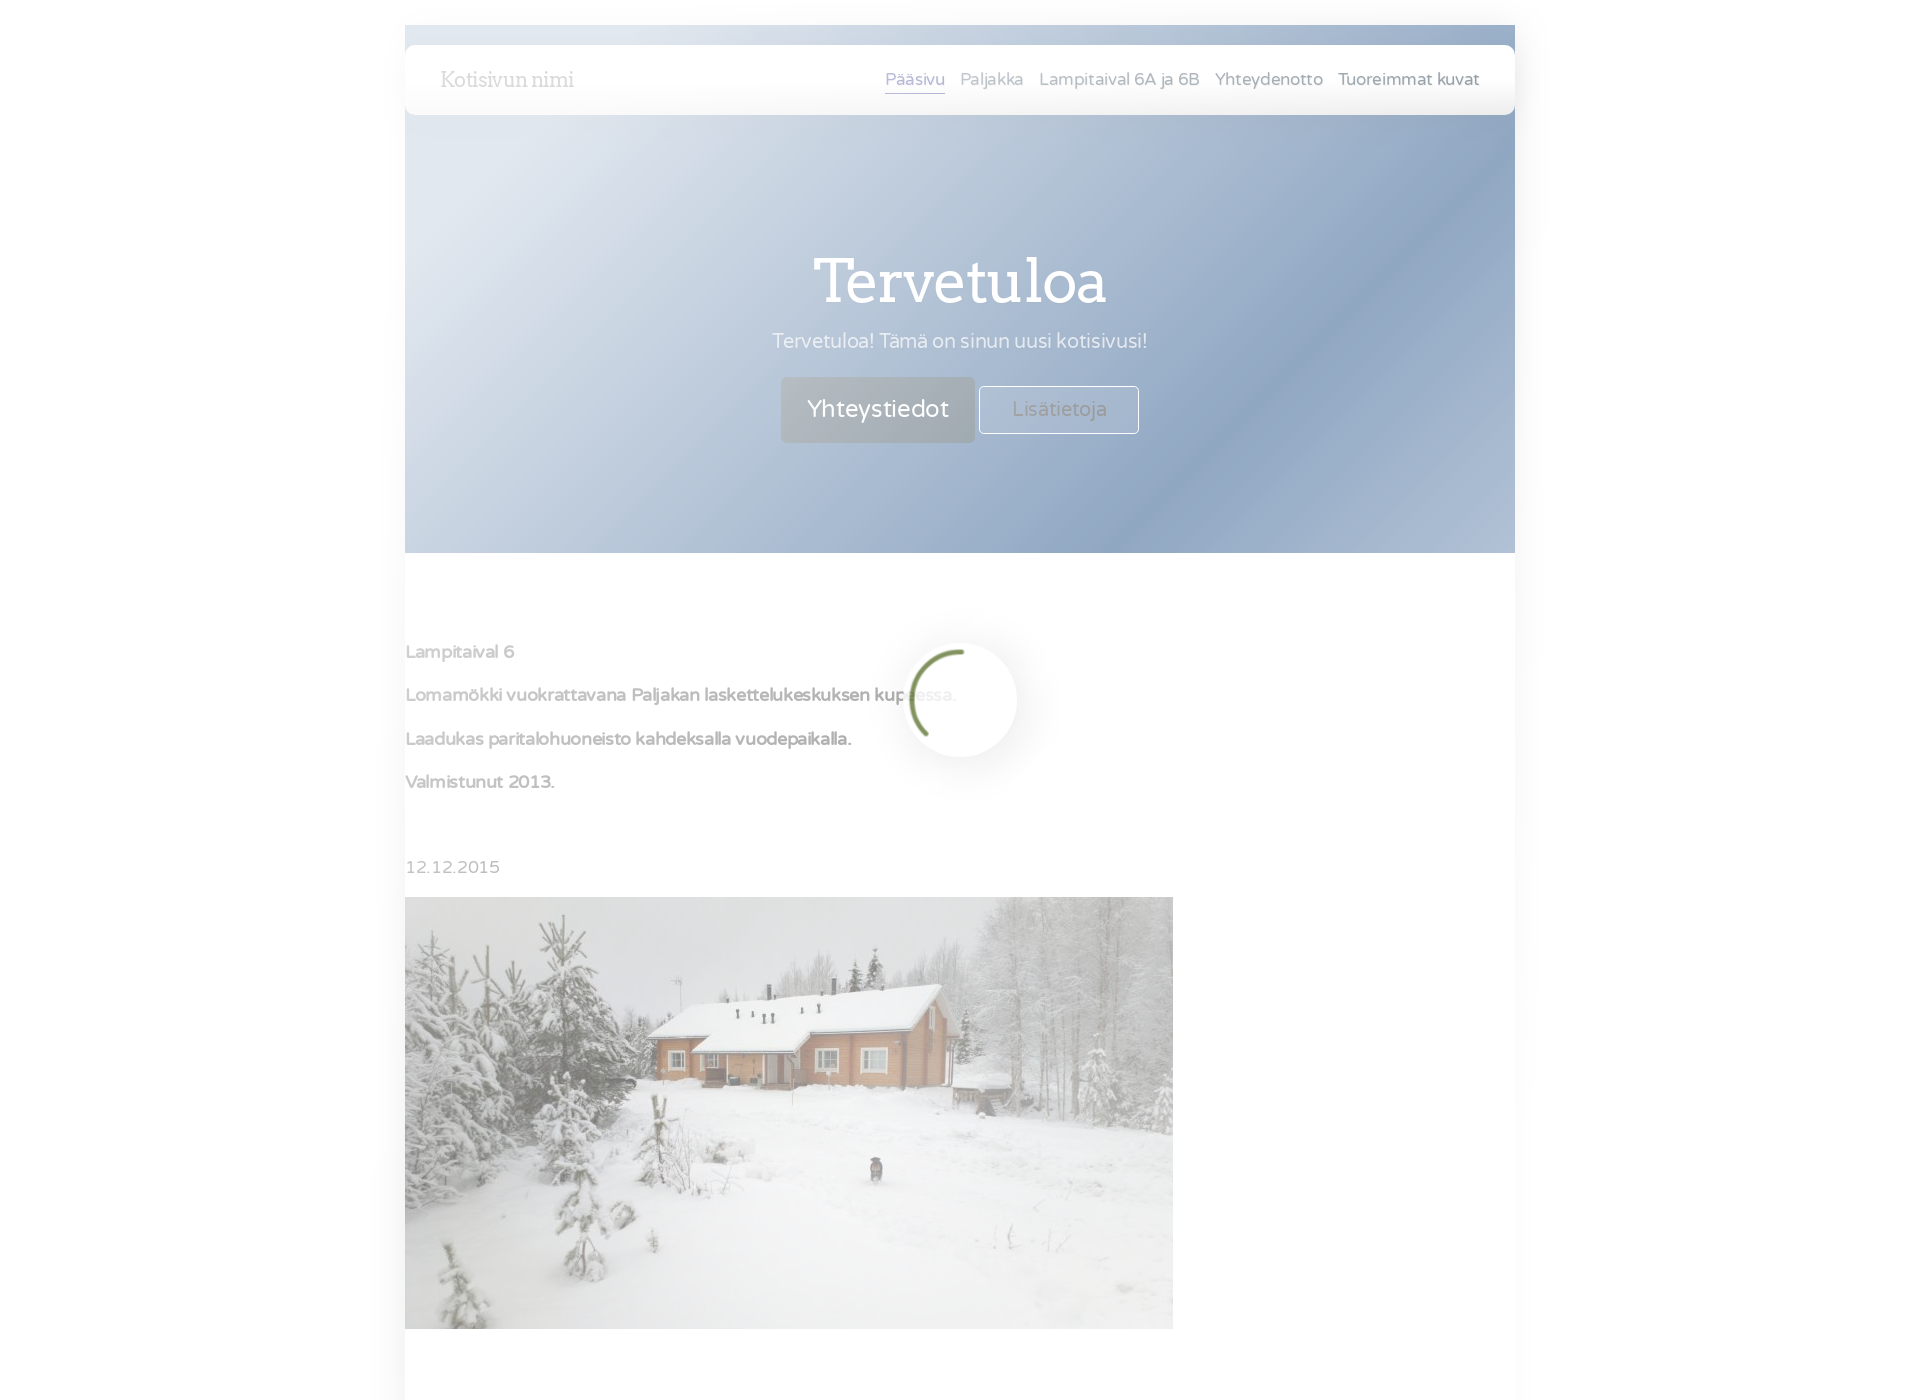 Skärmdump för lampitaival.fi